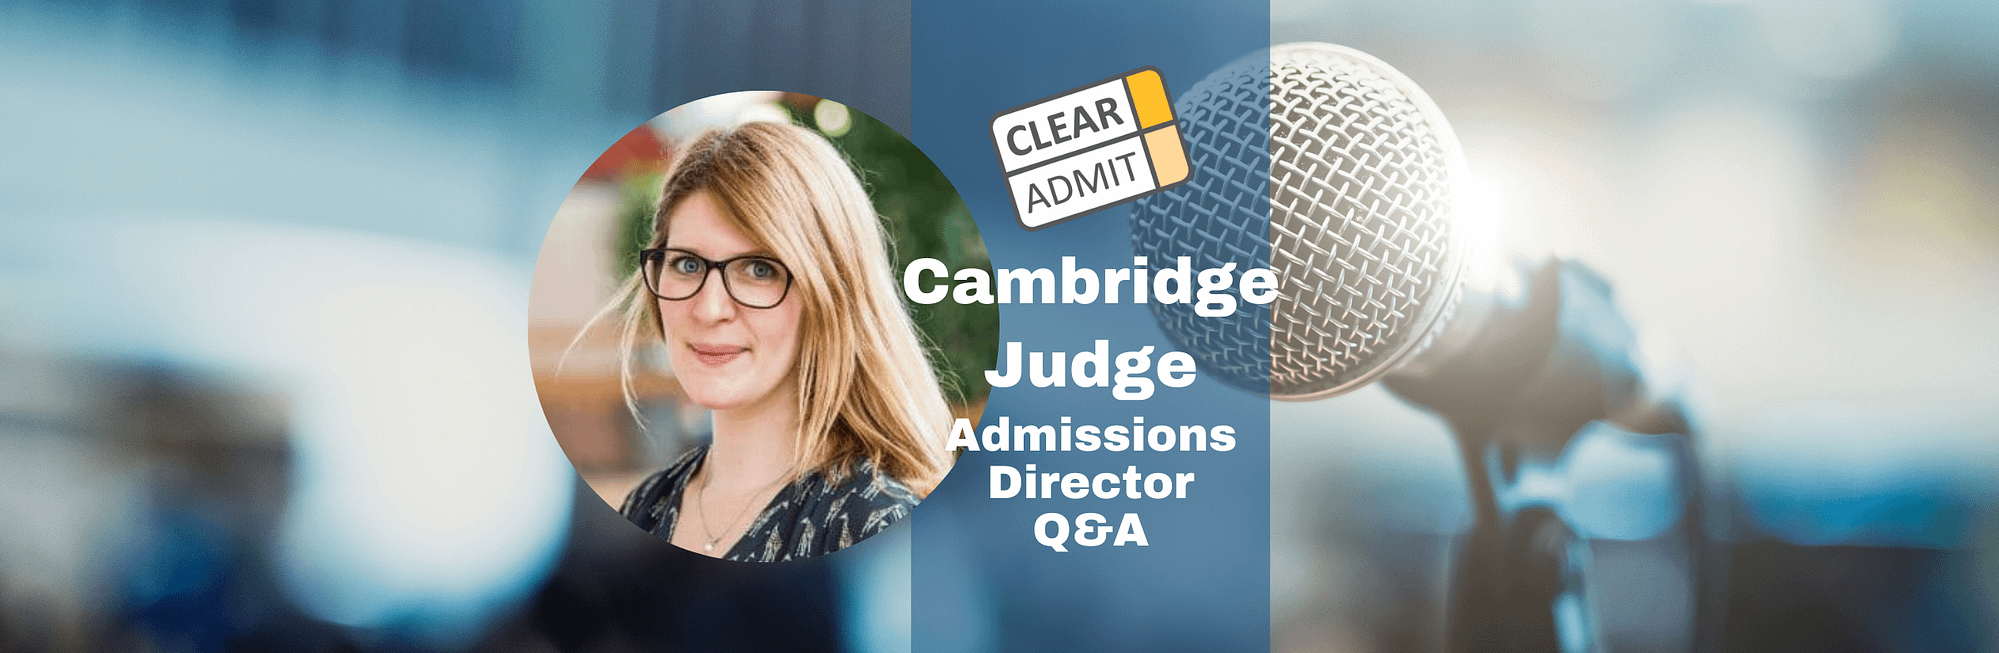 admissions cambridge judge